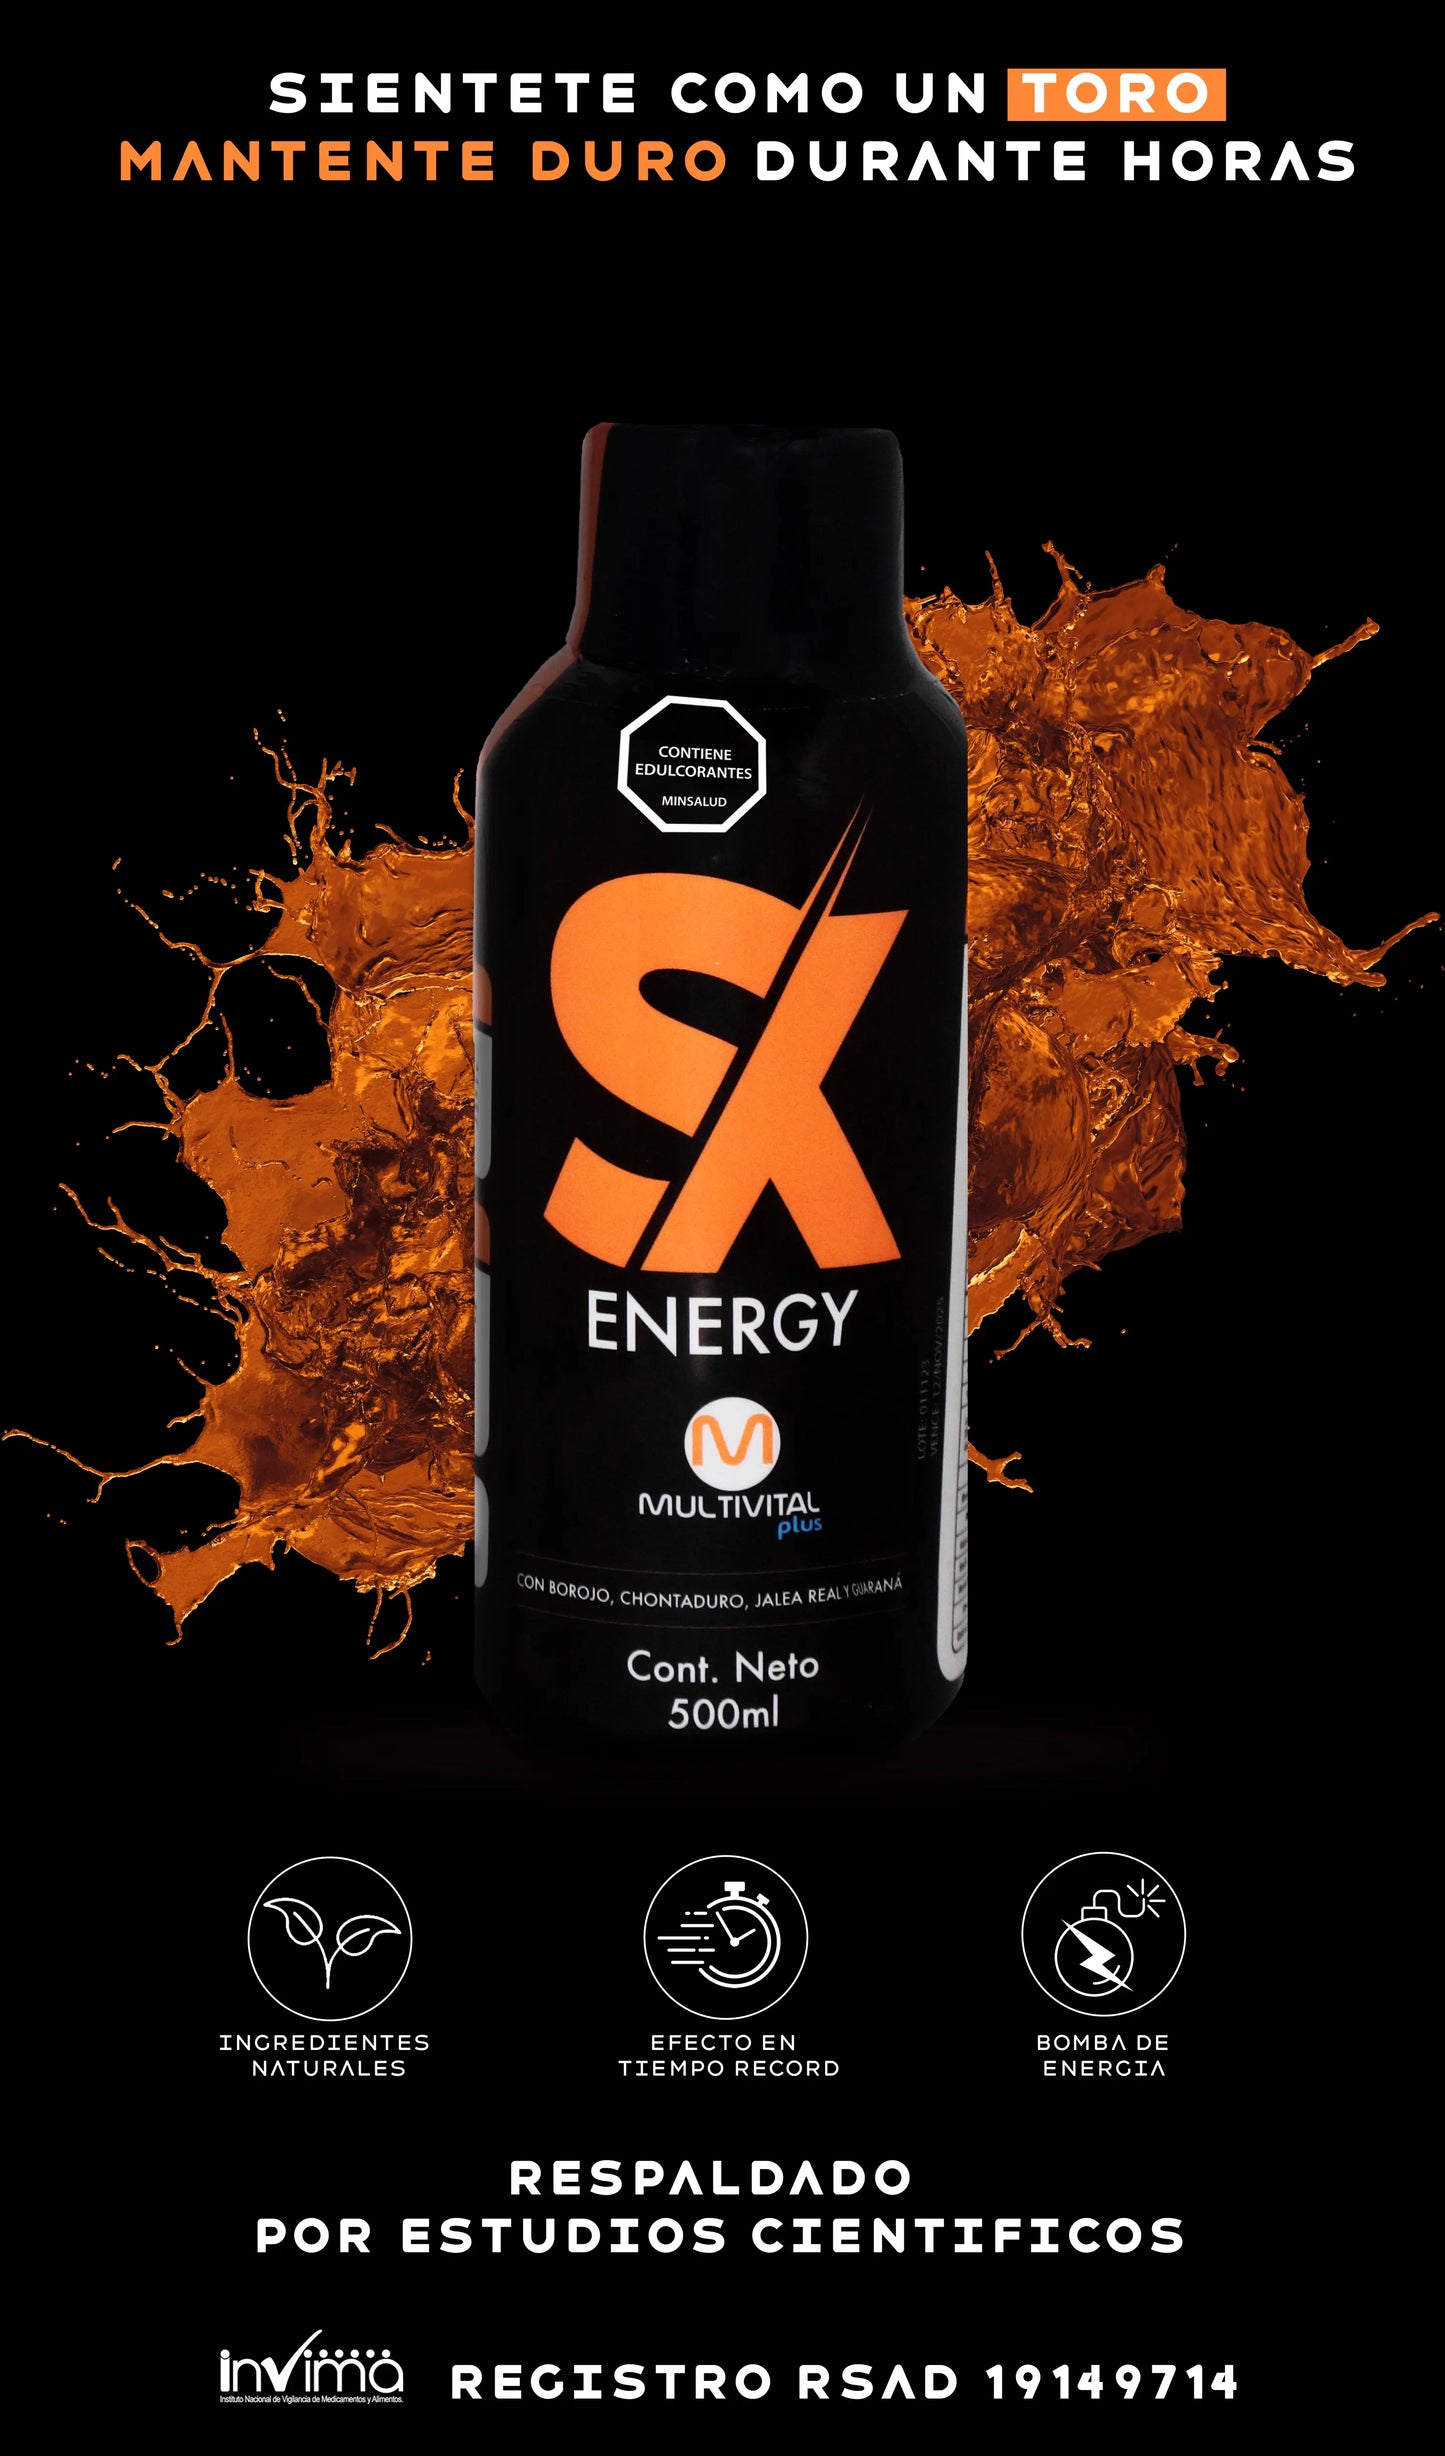 SX ENERGY